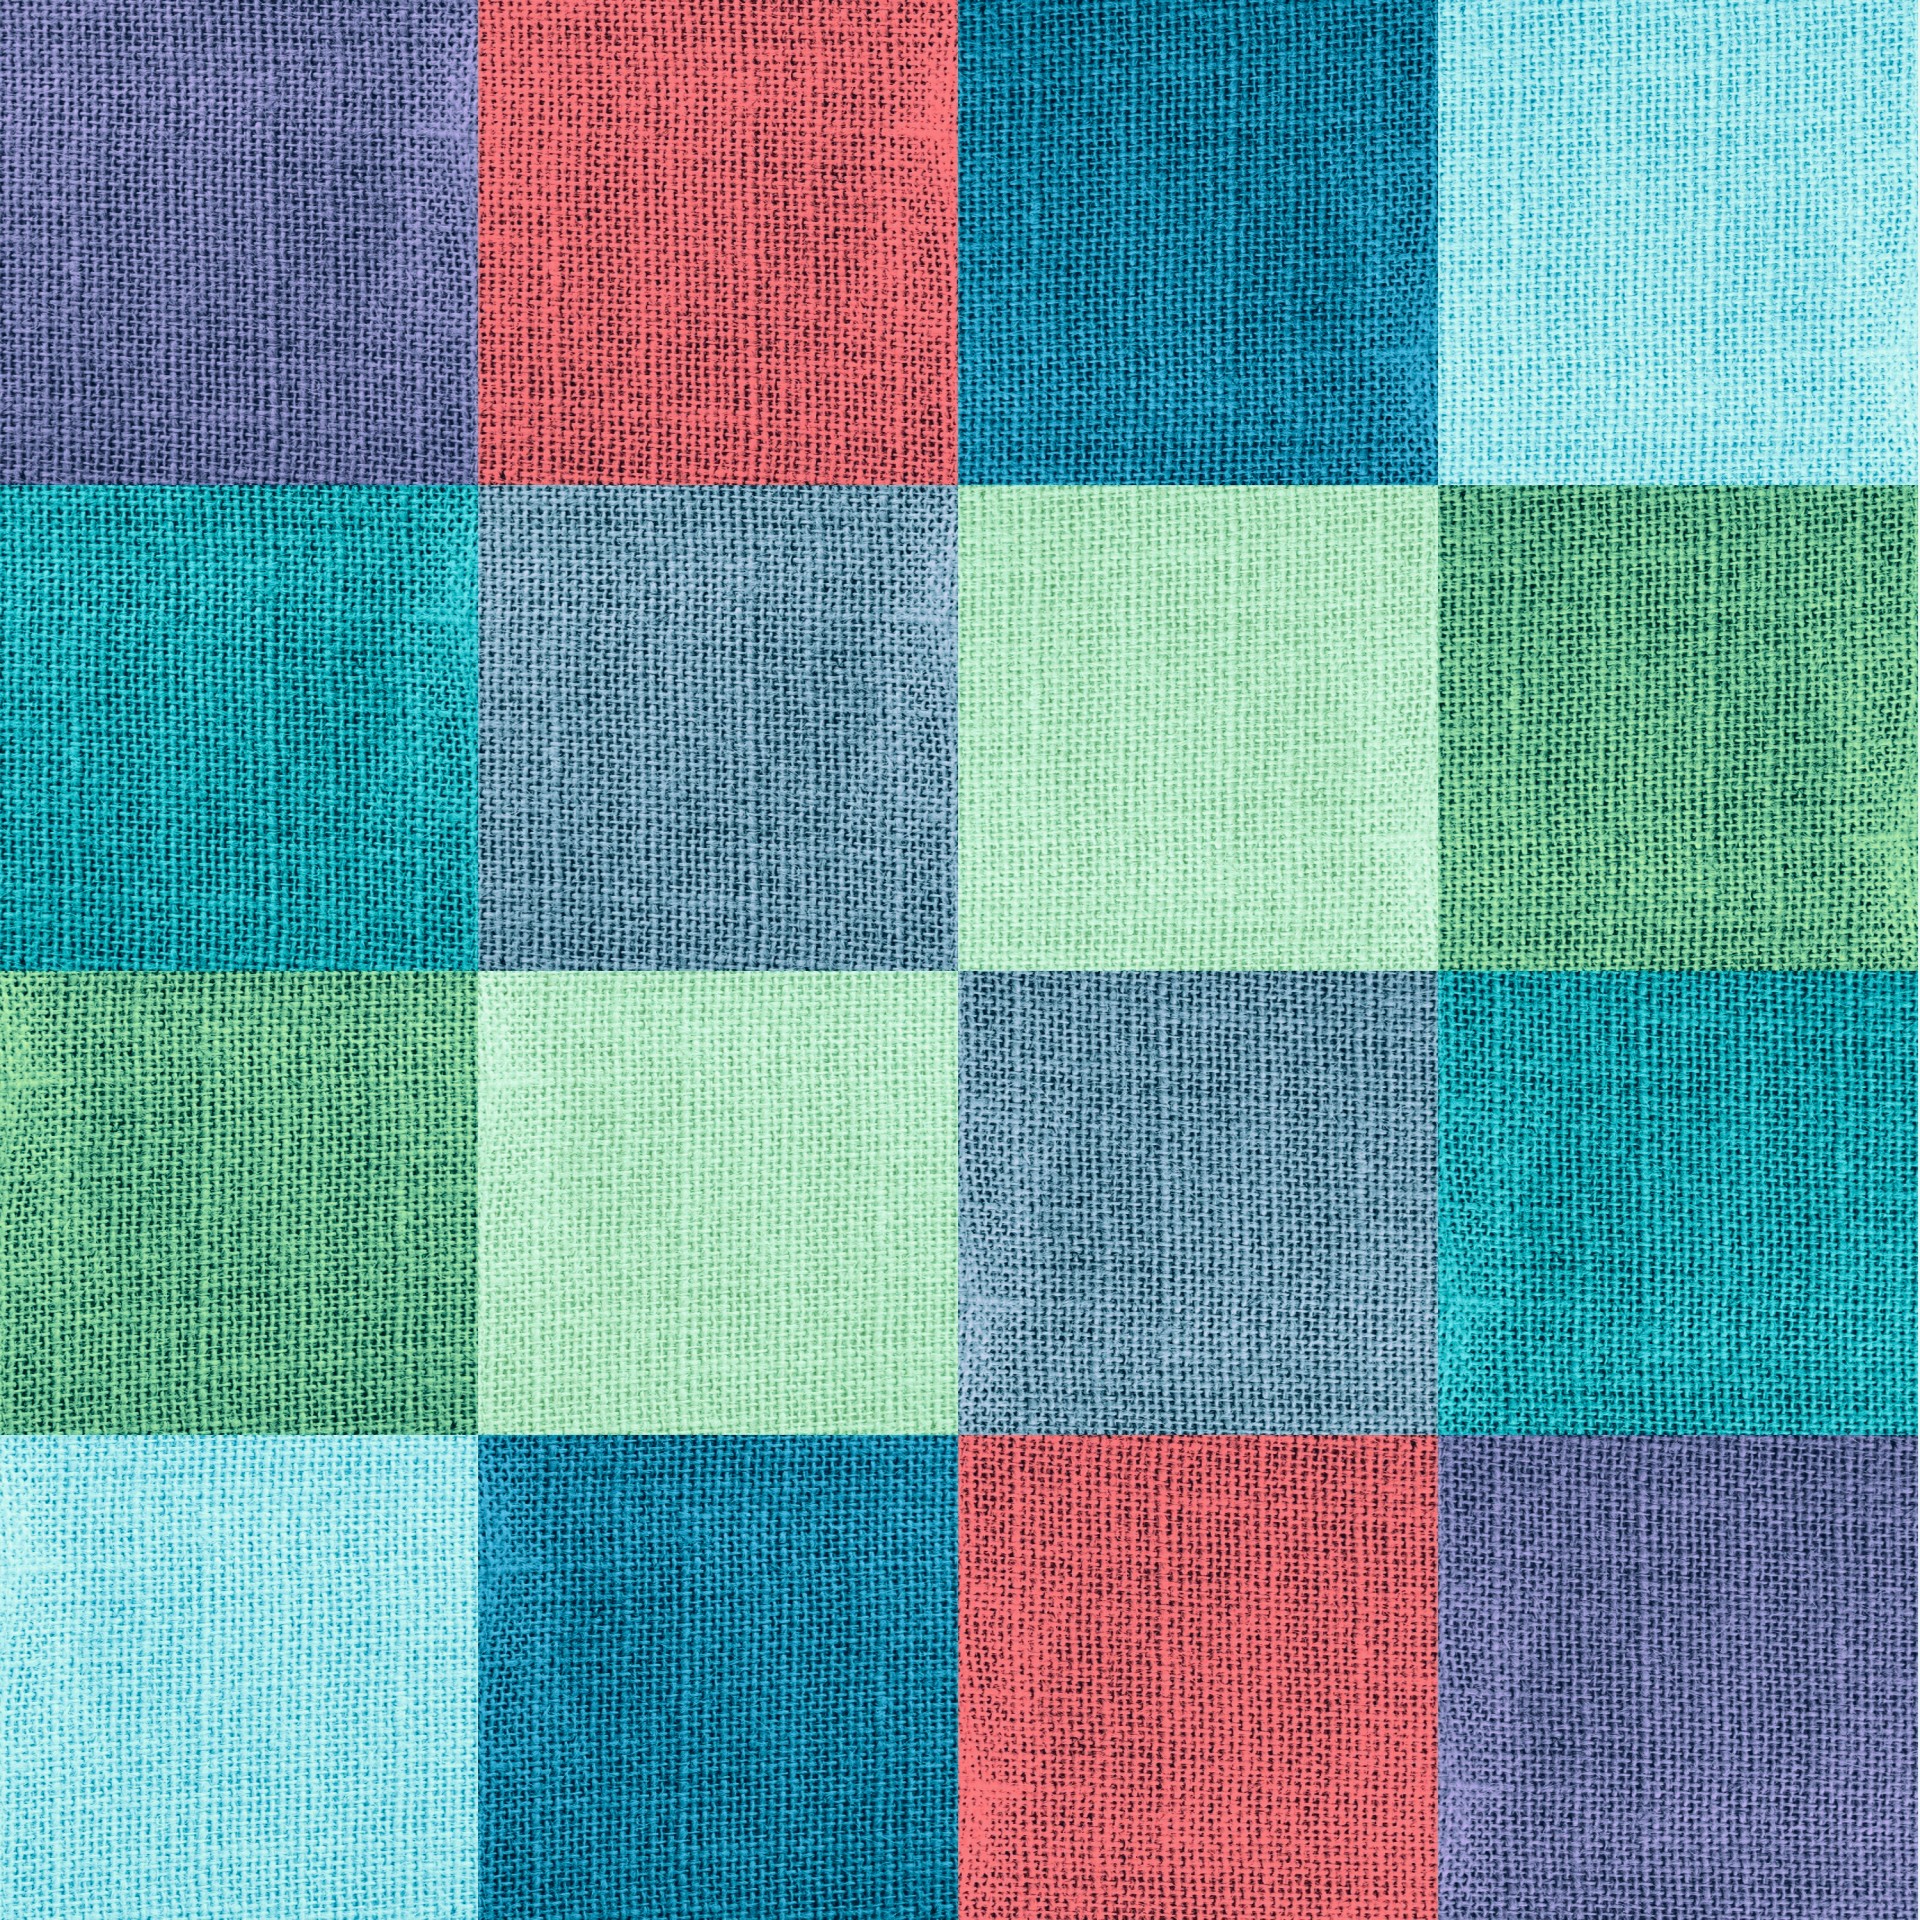 Squares verificados fundo colorido